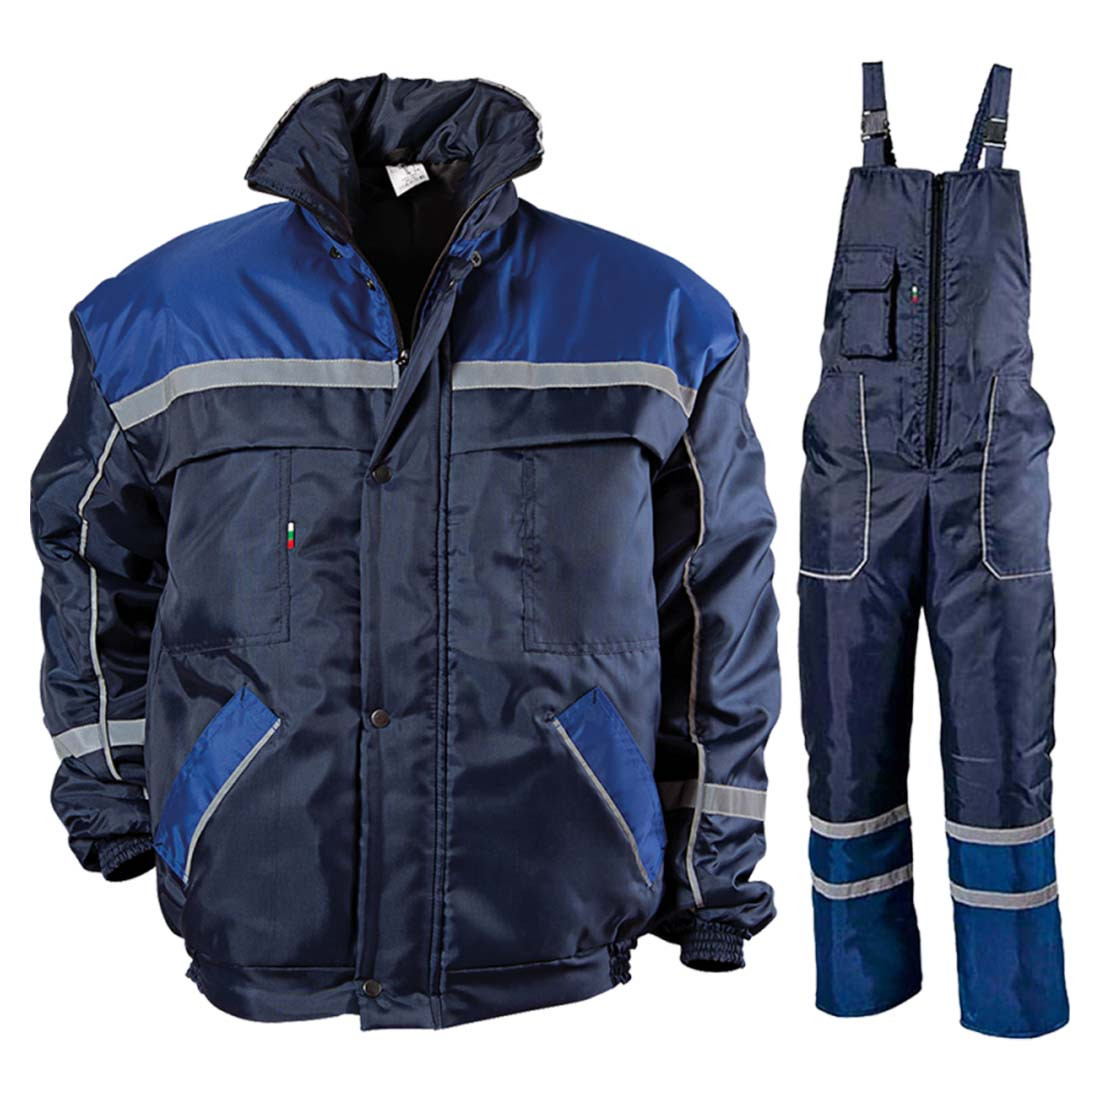 Collins Combinaison de travail d'hiver - Les vêtements de protection